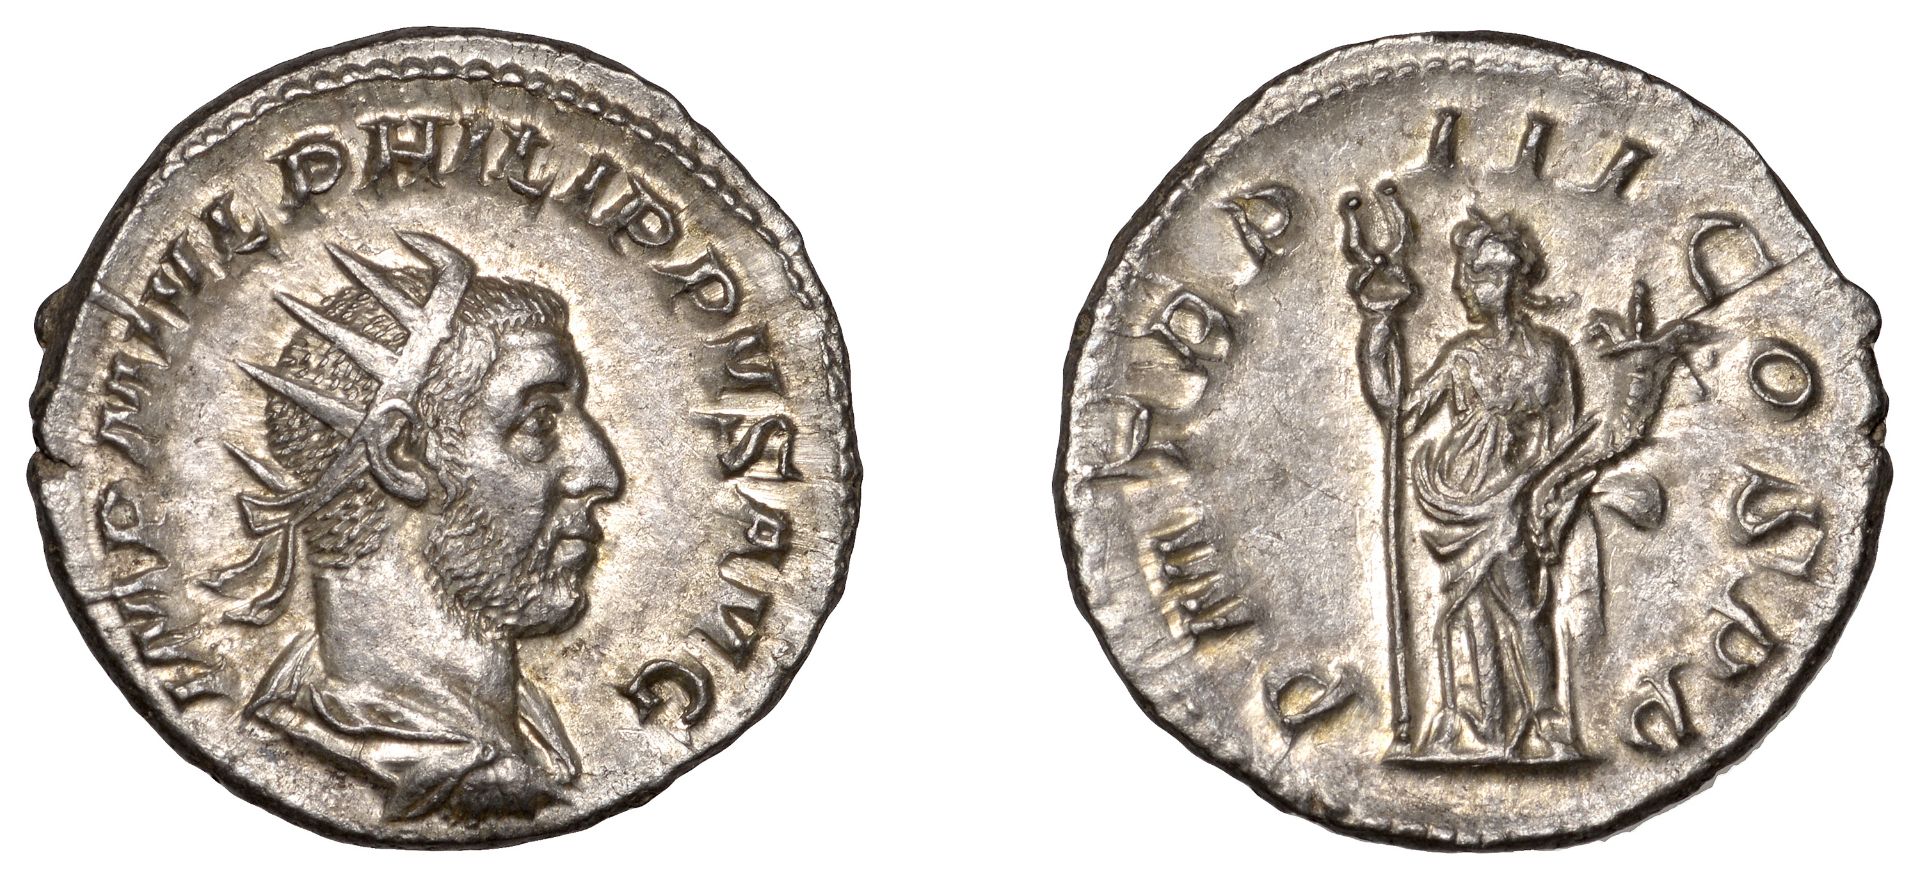 Philip I, Antoninianus, 247, radiate bust right, rev. pm tr p iii cos pp, Felicitas standing...